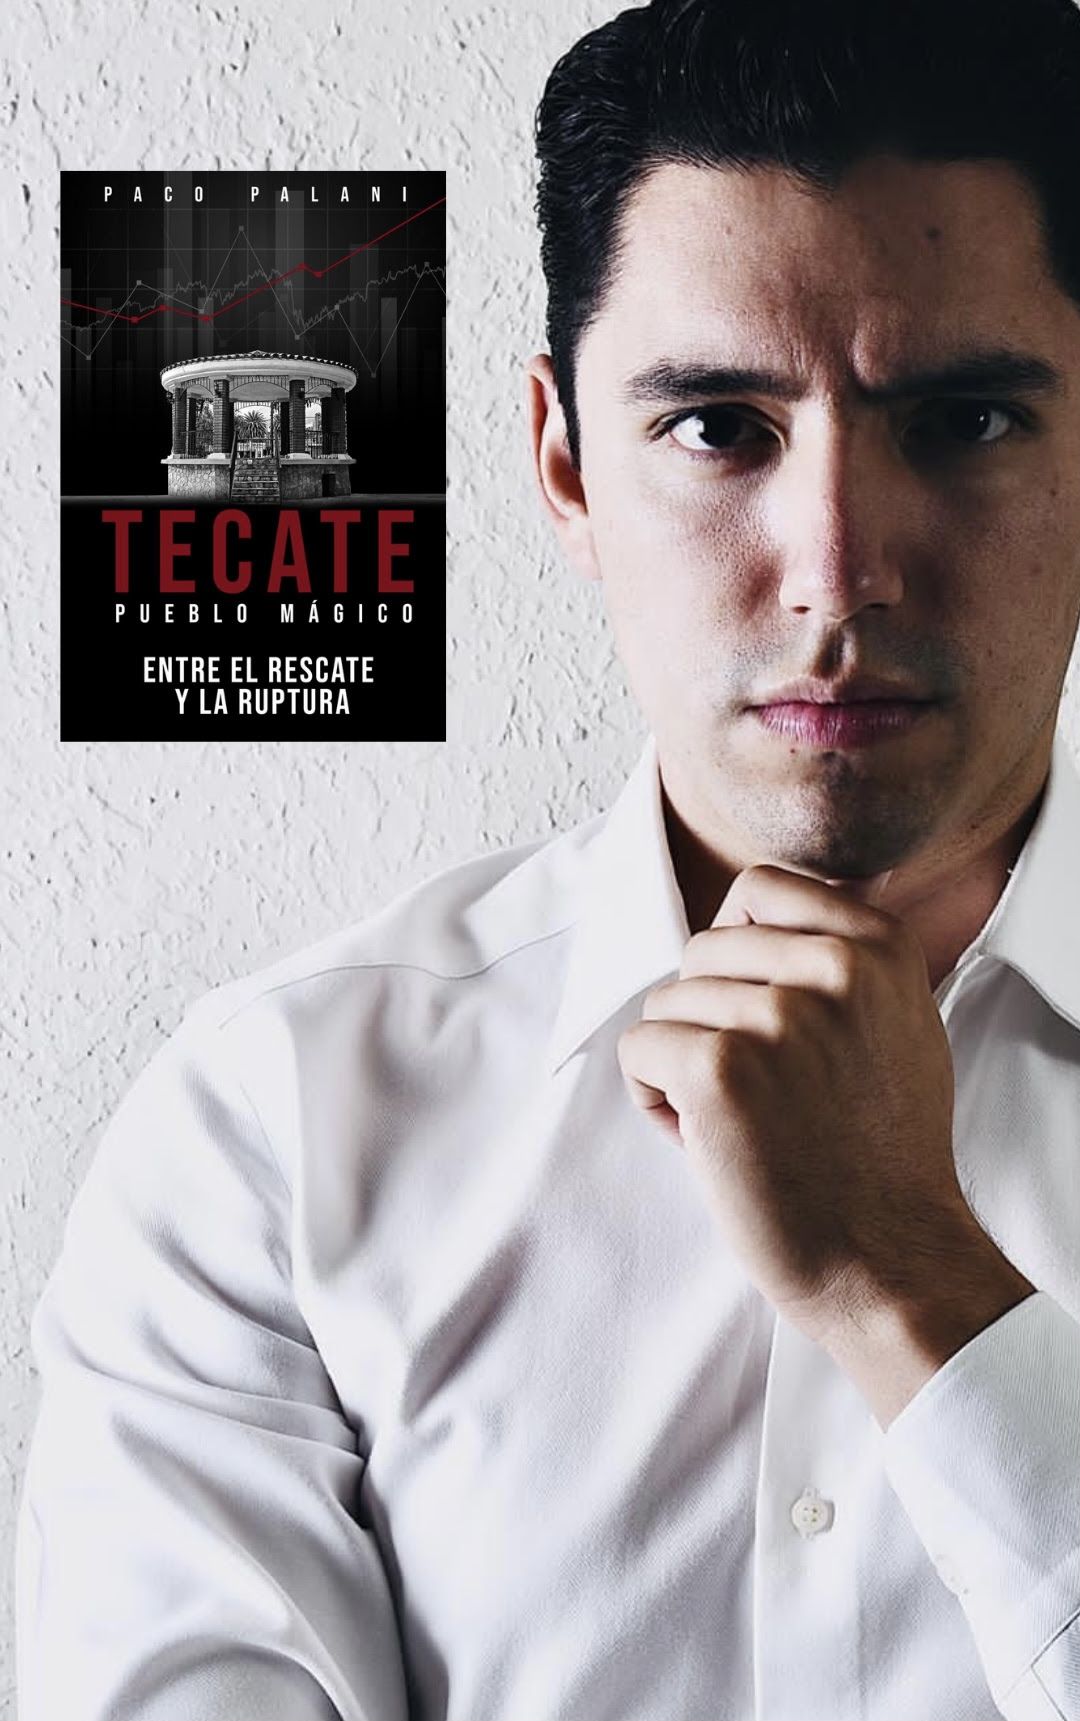 Paco Palani publica su tercer libro Tecate Pueblo Mágico entre el rescate y la ruptura .